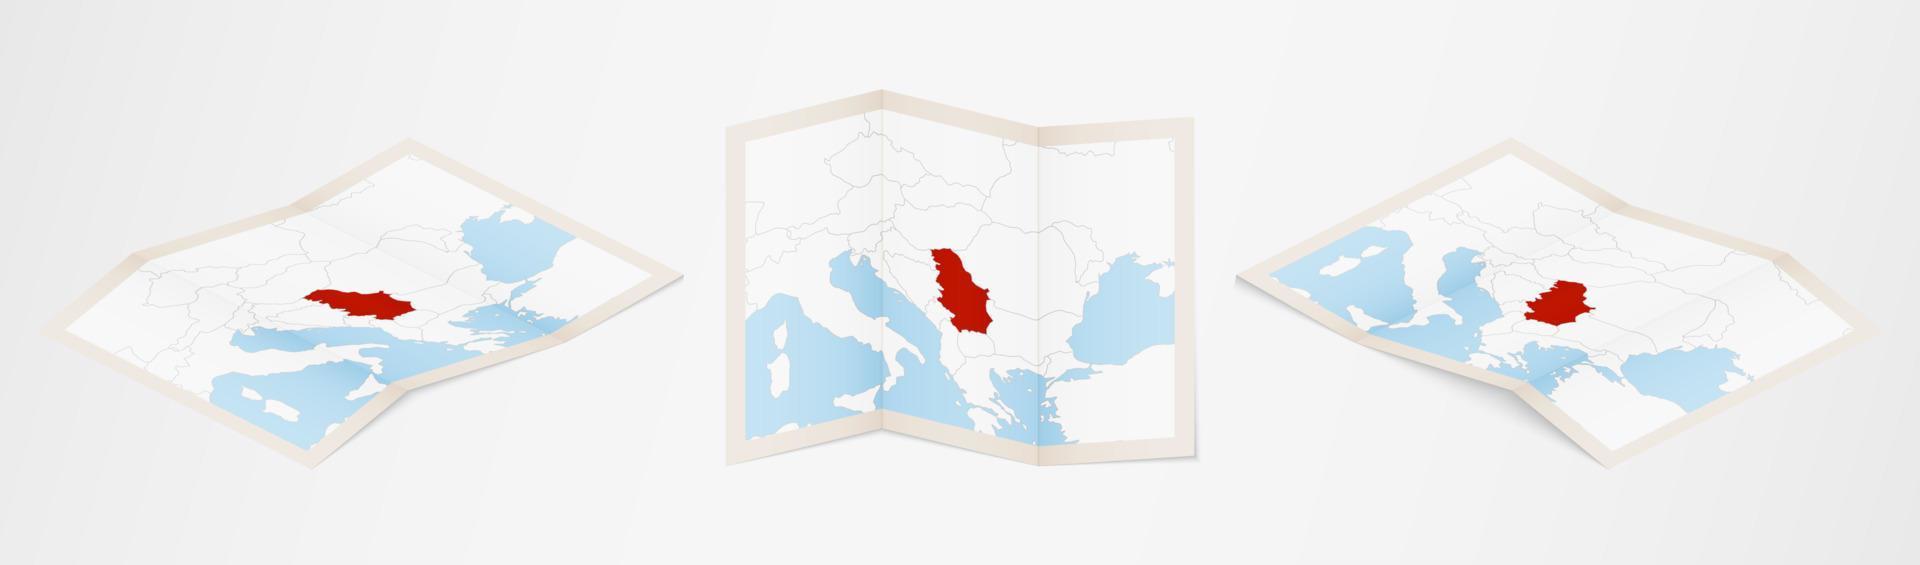 mapa plegado de serbia en tres versiones diferentes. vector